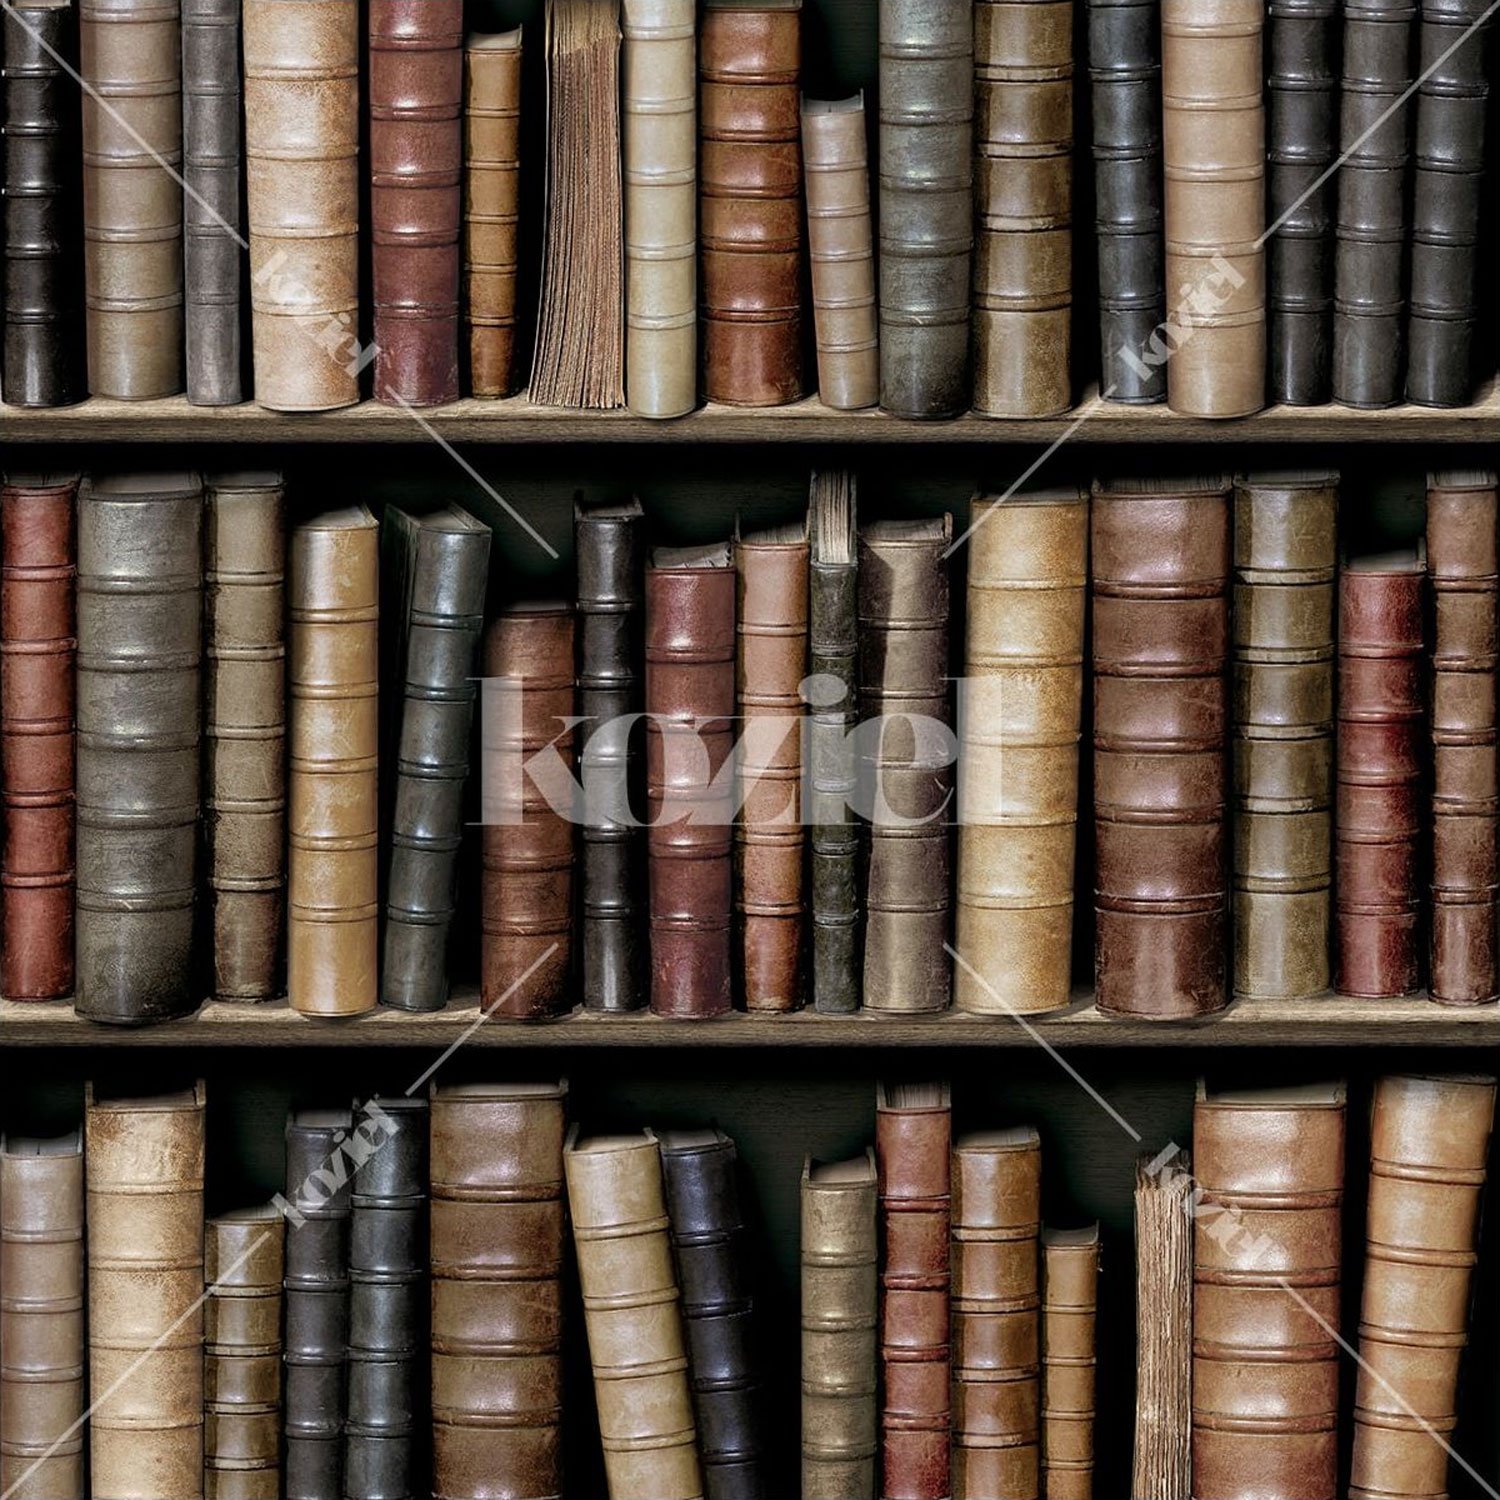 Tapete „Bibliothek alte Bücher“, Koziel aus Frankreich